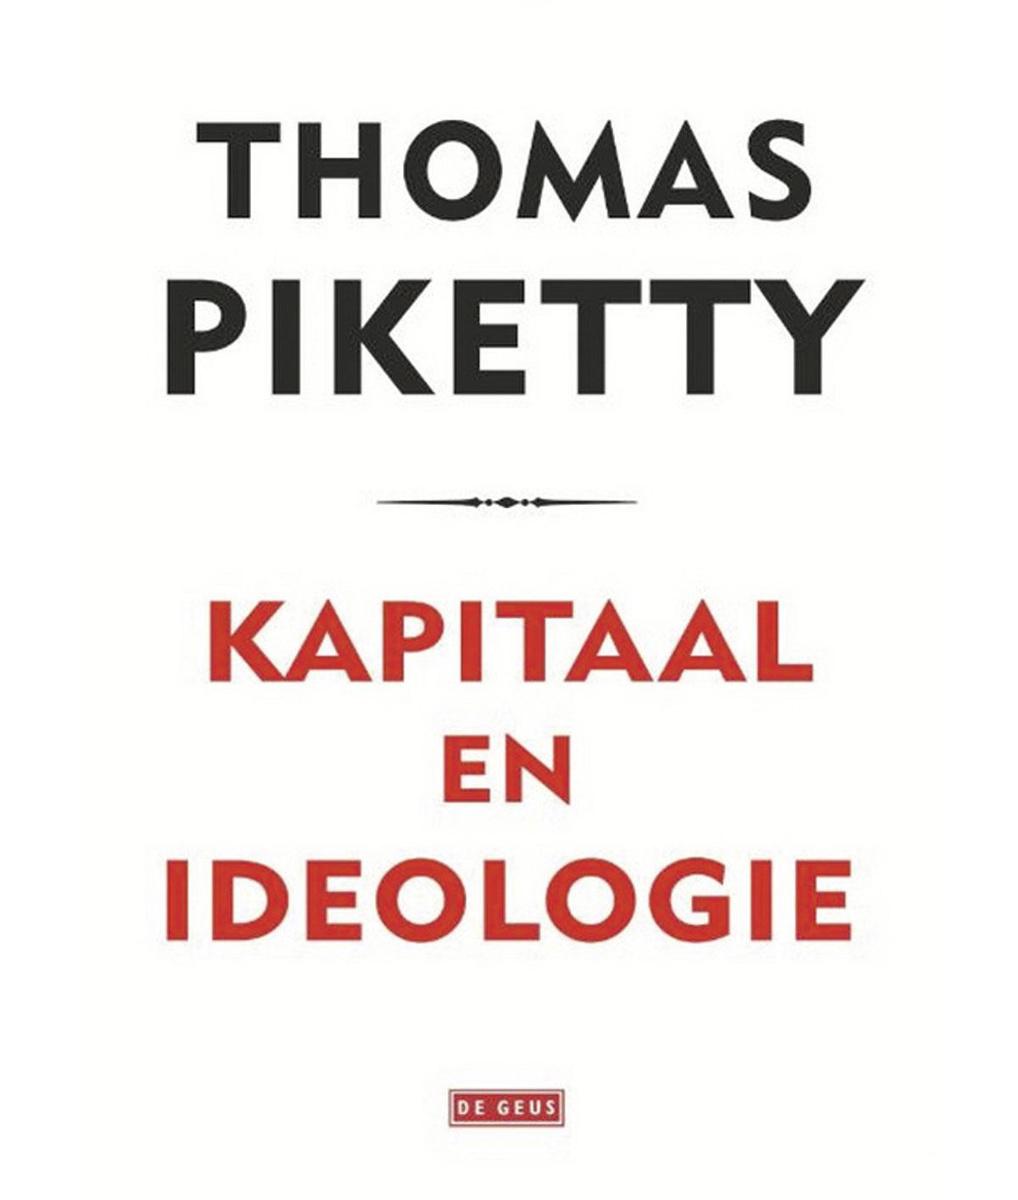 Thomas Piketty, Kapitaal en ideologie, De Geus, 1136 blz., 49,99 euro.